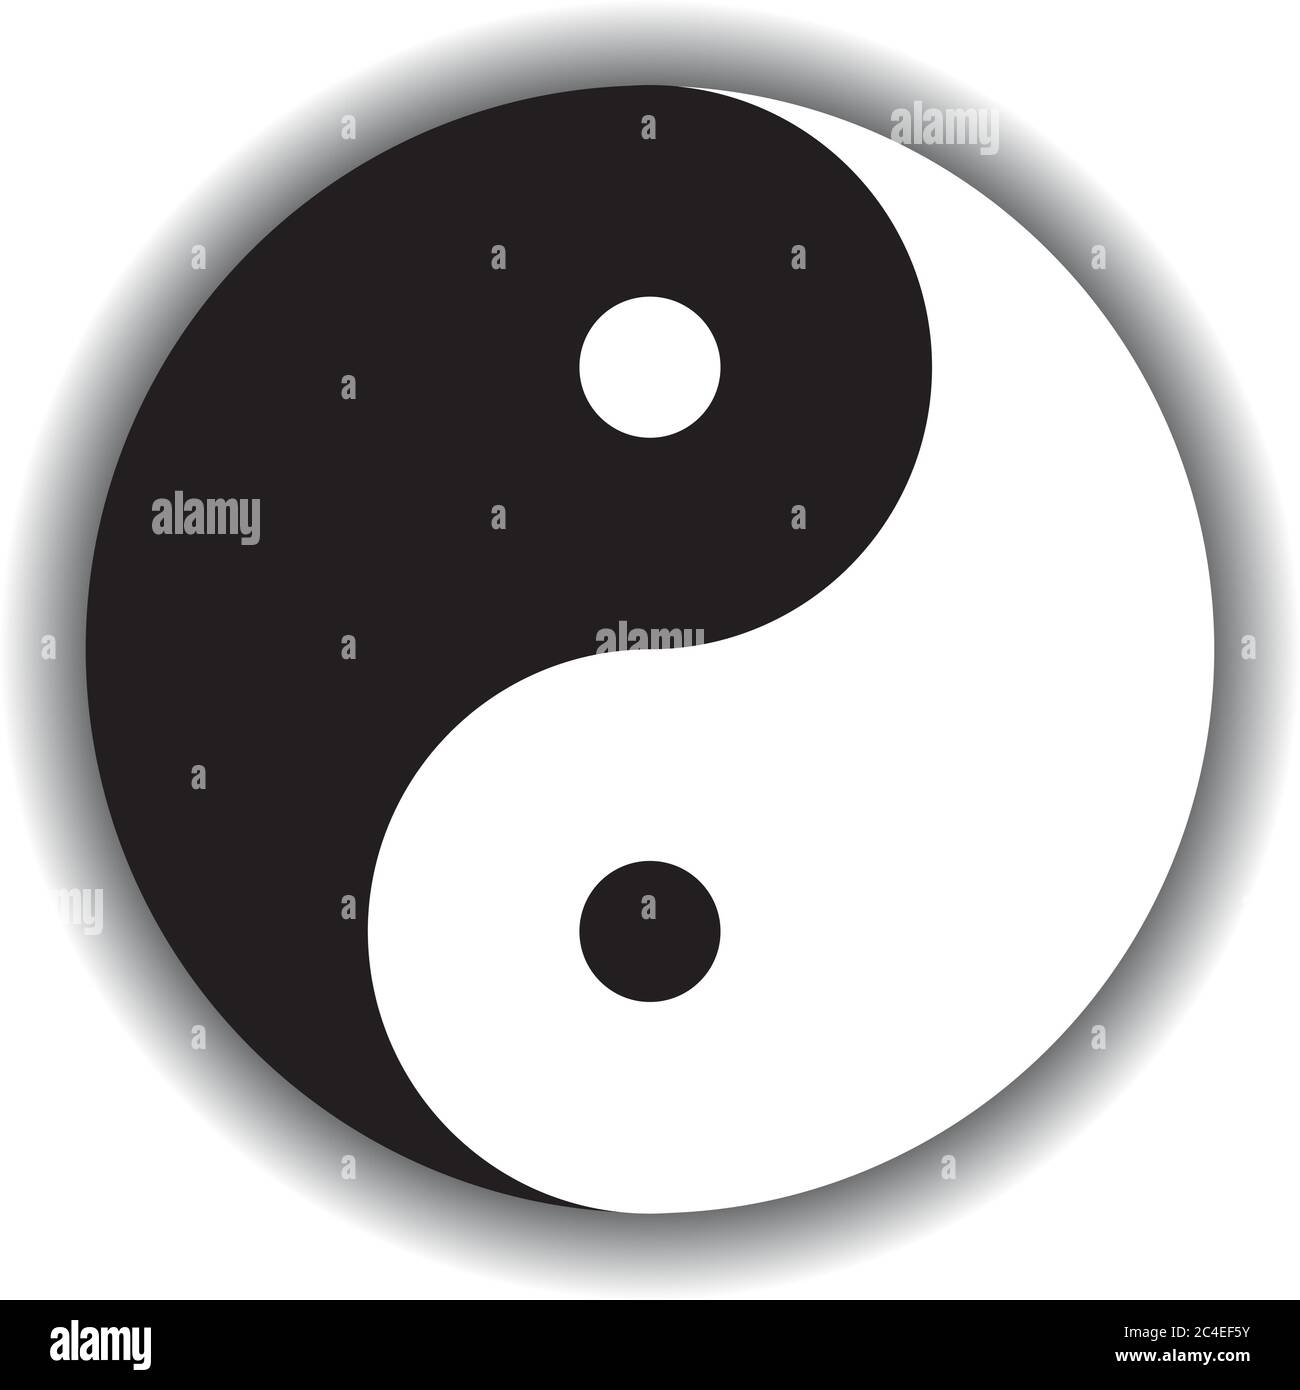 Yin Yang simbolo icona di filosofia cinese descrive come forze opposte e opposte possono essere complementari, interconnesse e interdipendenti nel mondo naturale. Illustrazione in bianco e nero con ombra. Illustrazione Vettoriale